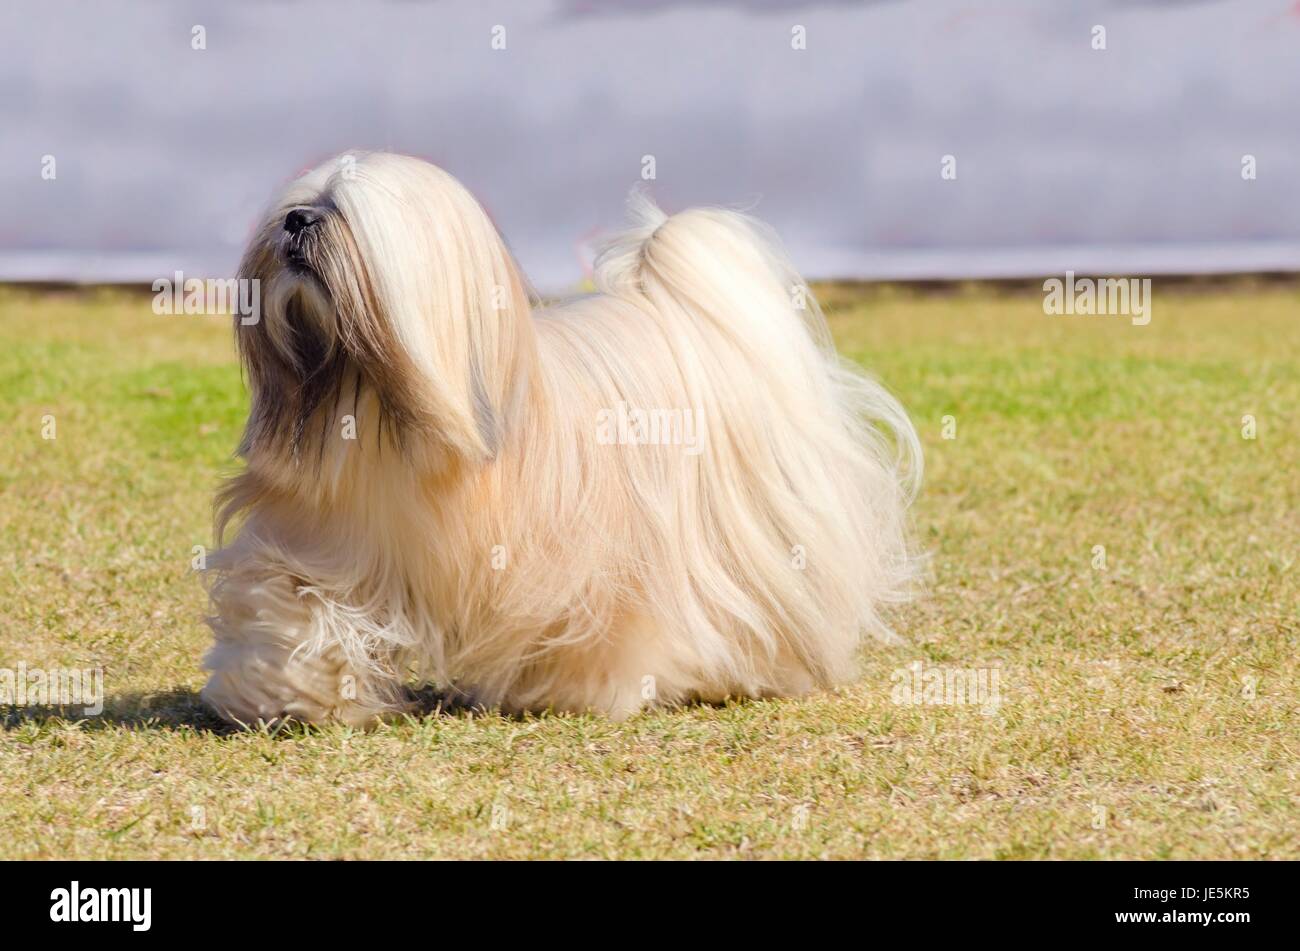 Un piccolo giovane di colore marrone chiaro, fulvo, beige, grigio e bianco Lhasa Apso cane con un lungo cappotto setosa in esecuzione sull'erba. I capelli lunghi e la barba Lasa cane ha pesanti dritto lungo cappotto e è un cane da compagnia. Foto Stock